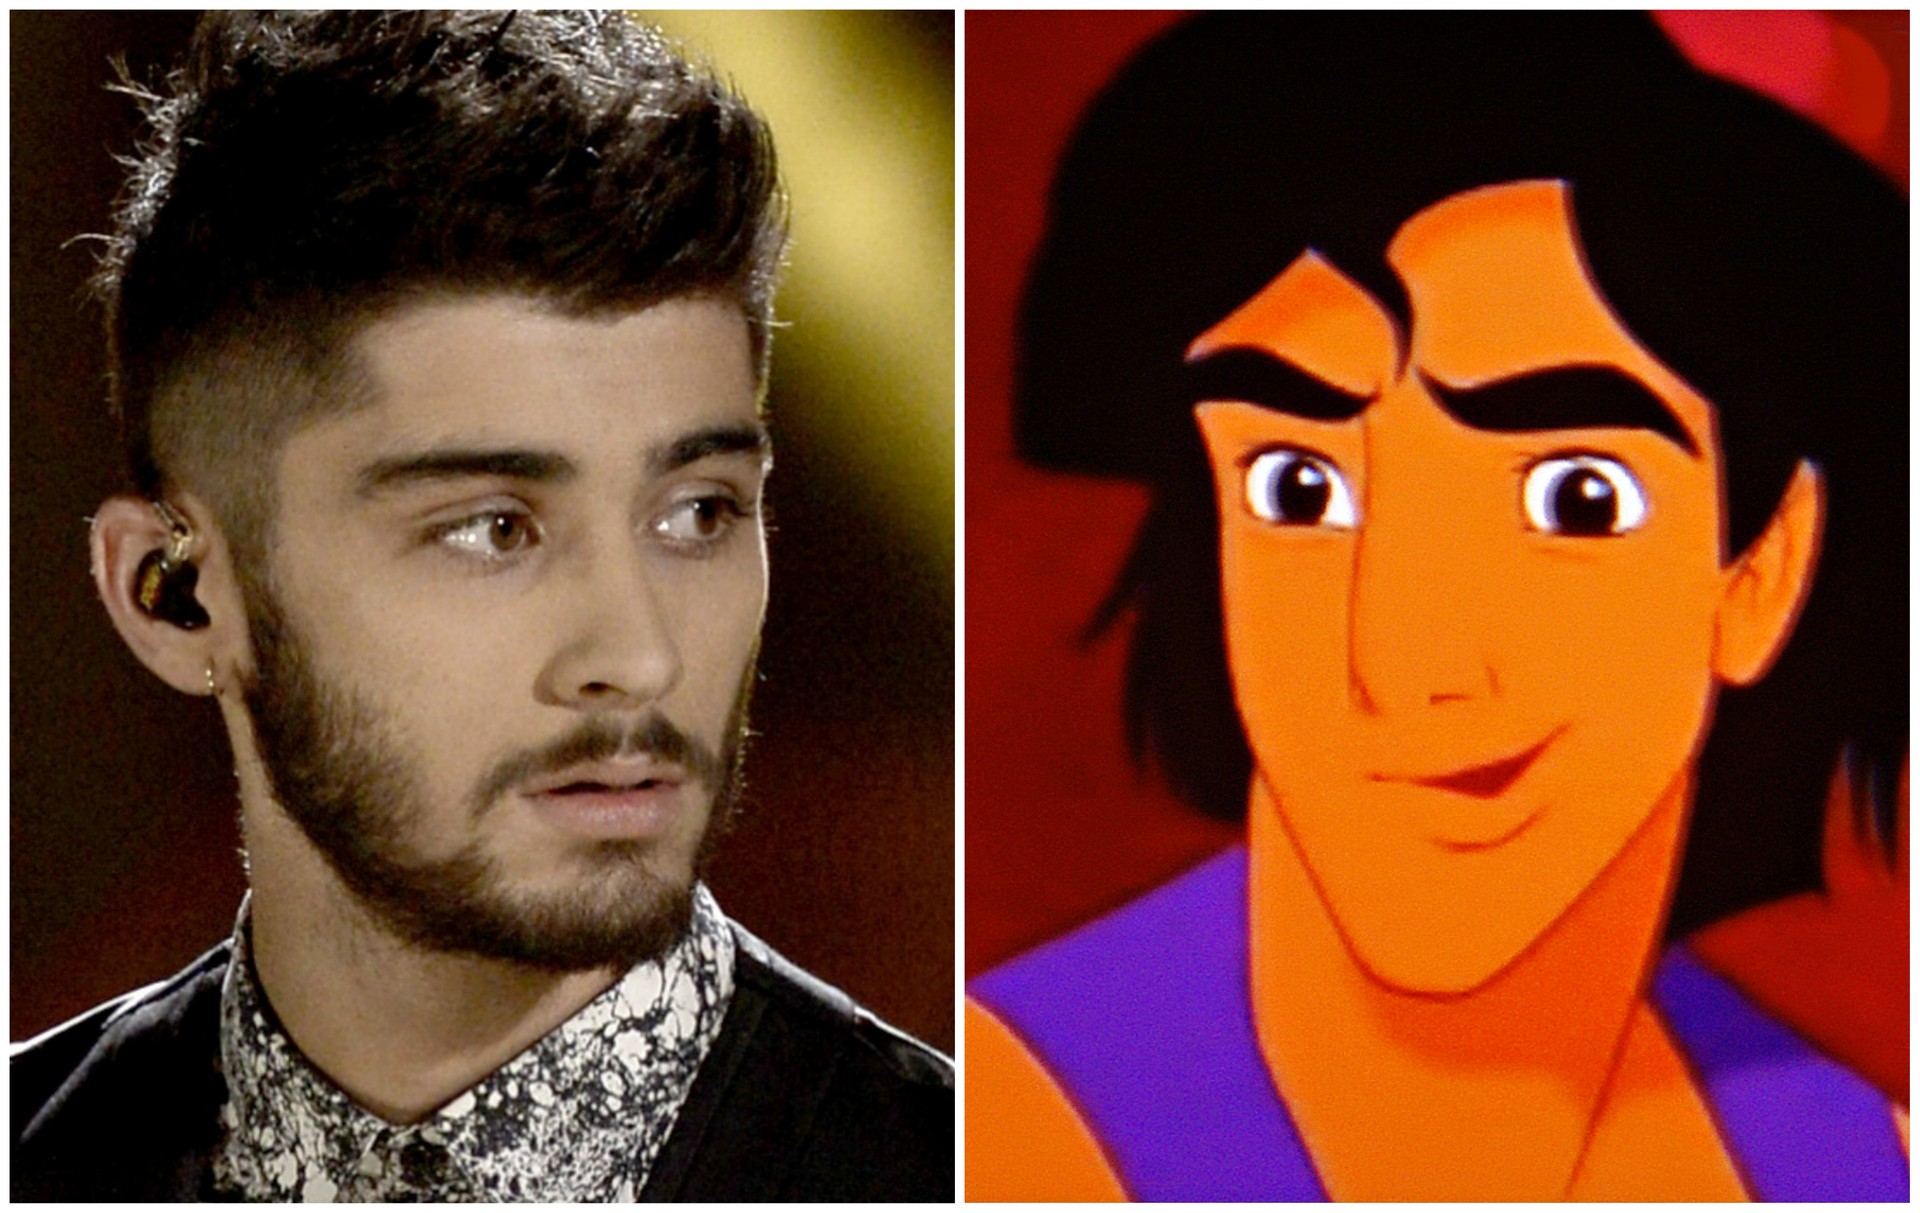 Filho de pai muçulmano, Zayn Malik, da boy band One Direction, lembra o primeiro herói de etnia árabe da Disney: 'Aladdin' (1992). (Foto: Getty Images e Divulgação)